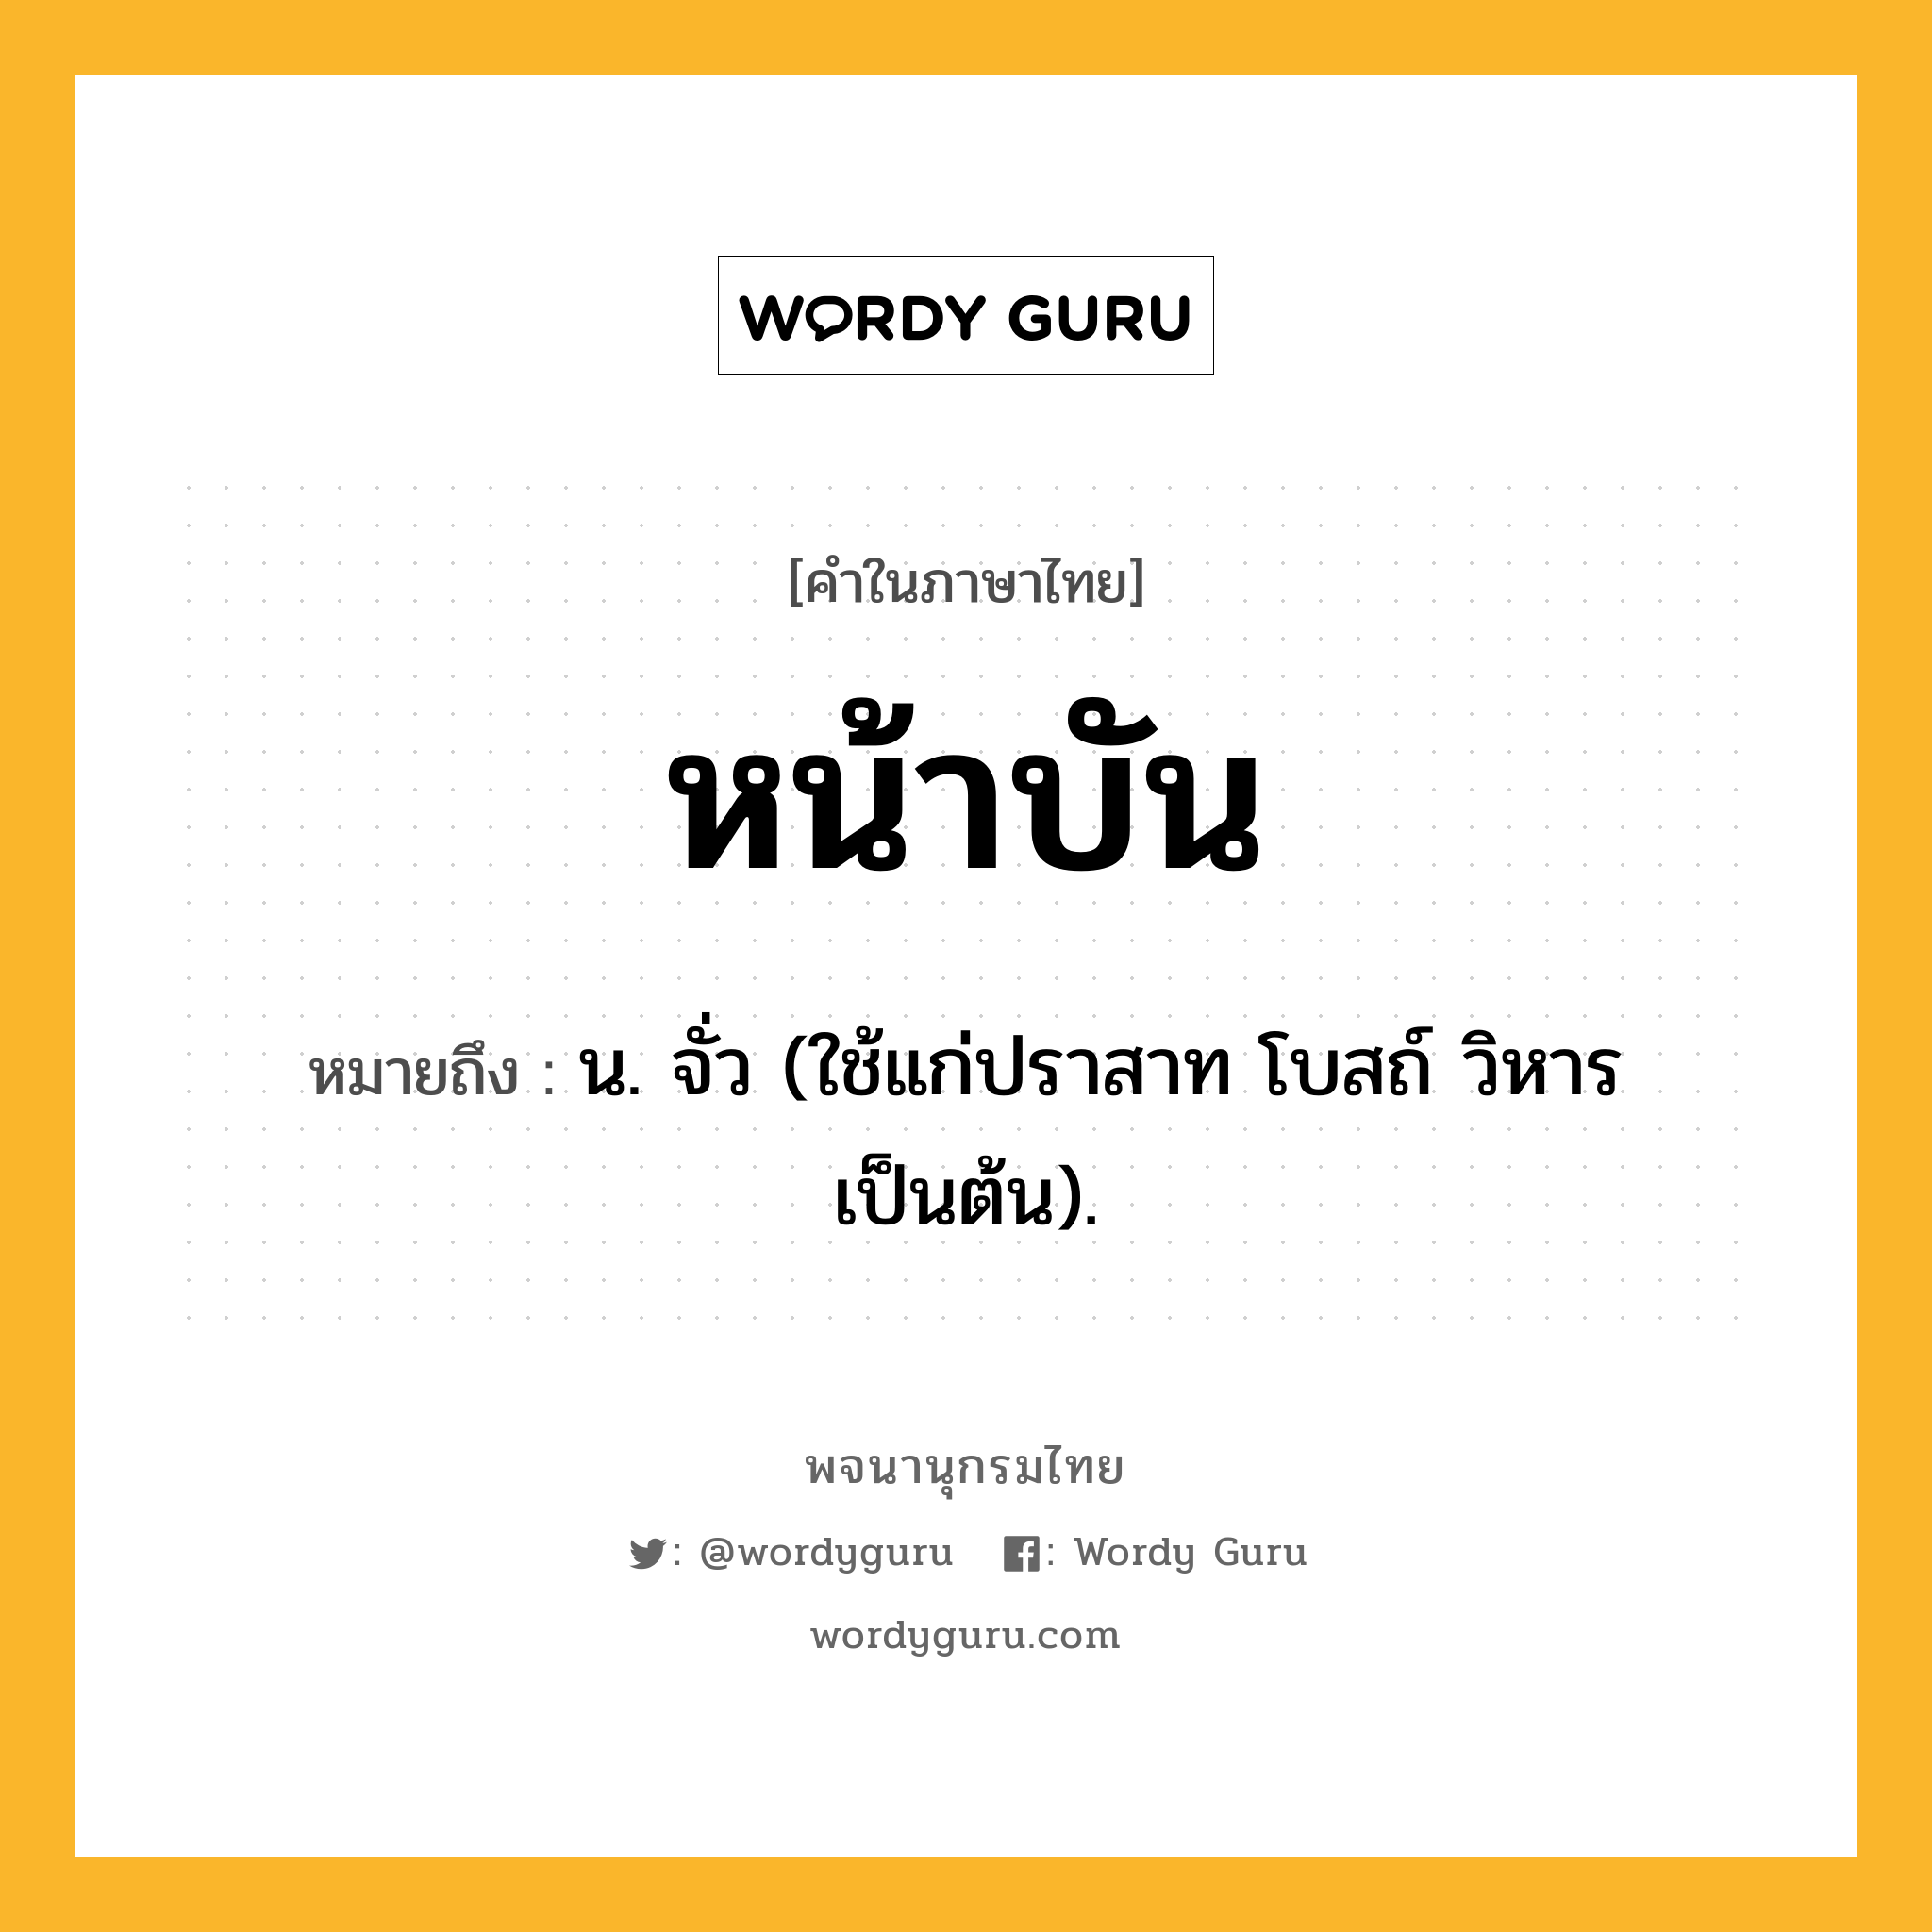 หน้าบัน ความหมาย หมายถึงอะไร?, คำในภาษาไทย หน้าบัน หมายถึง น. จั่ว (ใช้แก่ปราสาท โบสถ์ วิหาร เป็นต้น).